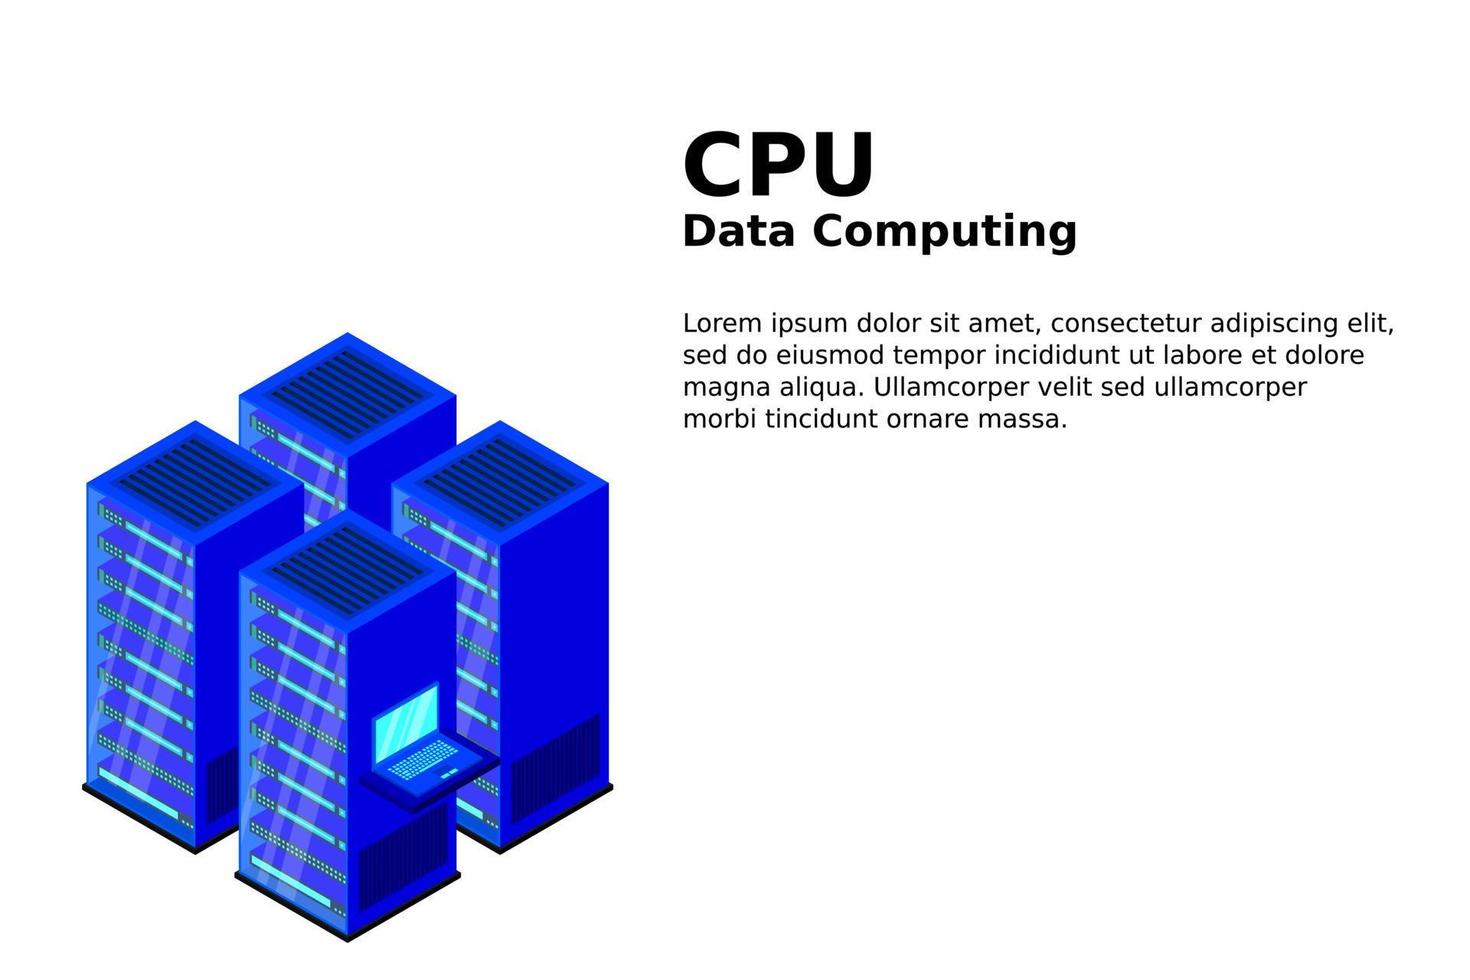 Mainframe, Powered Server, High-Tech-Konzept, Rechenzentrum, Cloud-Datenspeicher vektor